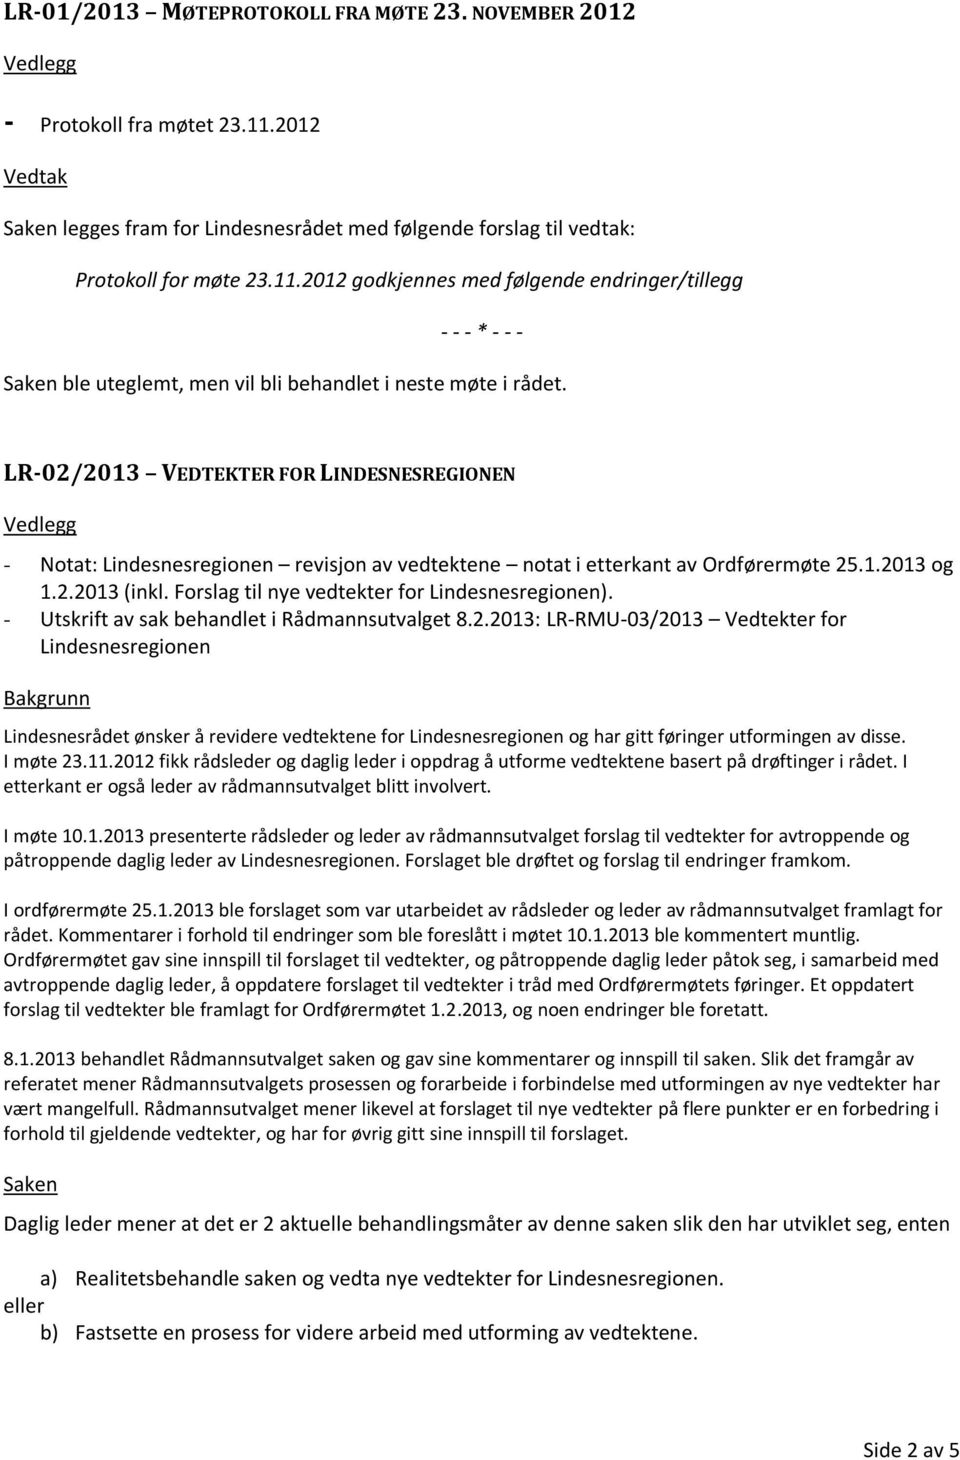 Forslag til nye vedtekter for Lindesnesregionen). - Utskrift av sak behandlet i Rådmannsutvalget 8.2.